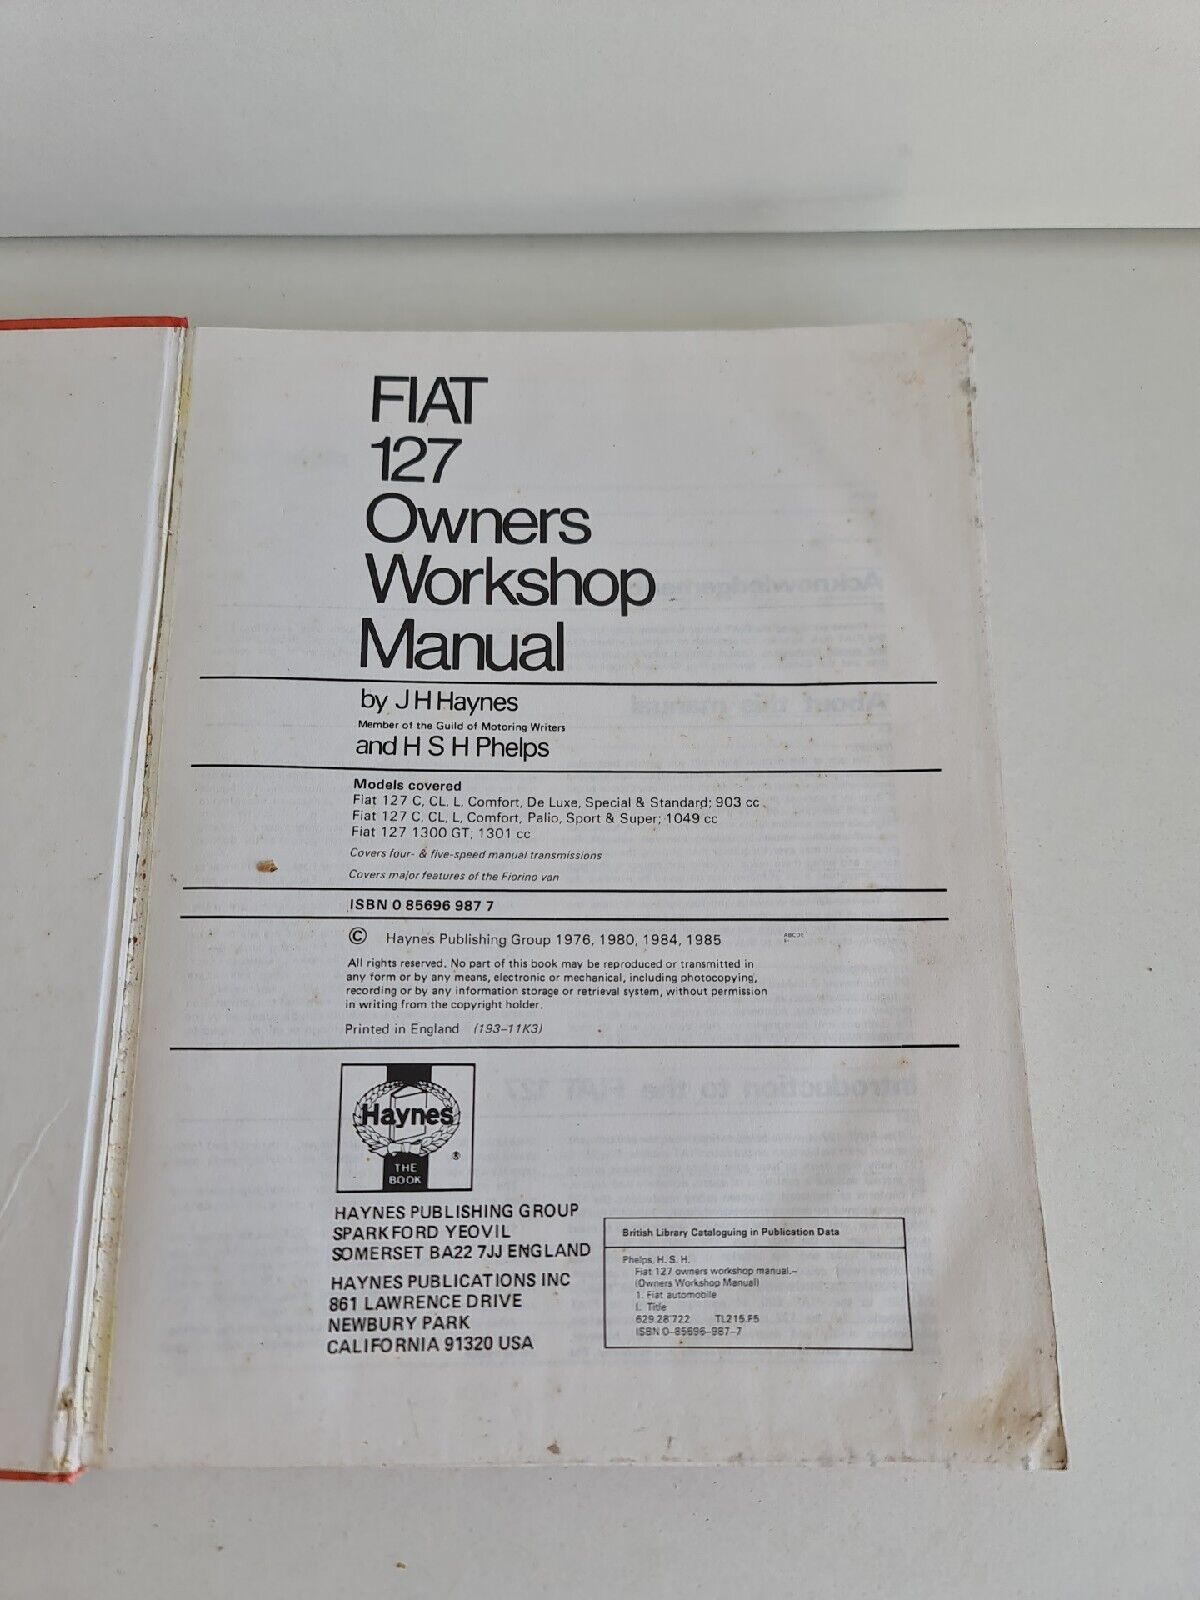 Fiat 127 1971-83 Owner's Workshop Manual by H.S.H. Phelps, J. H. Haynes.